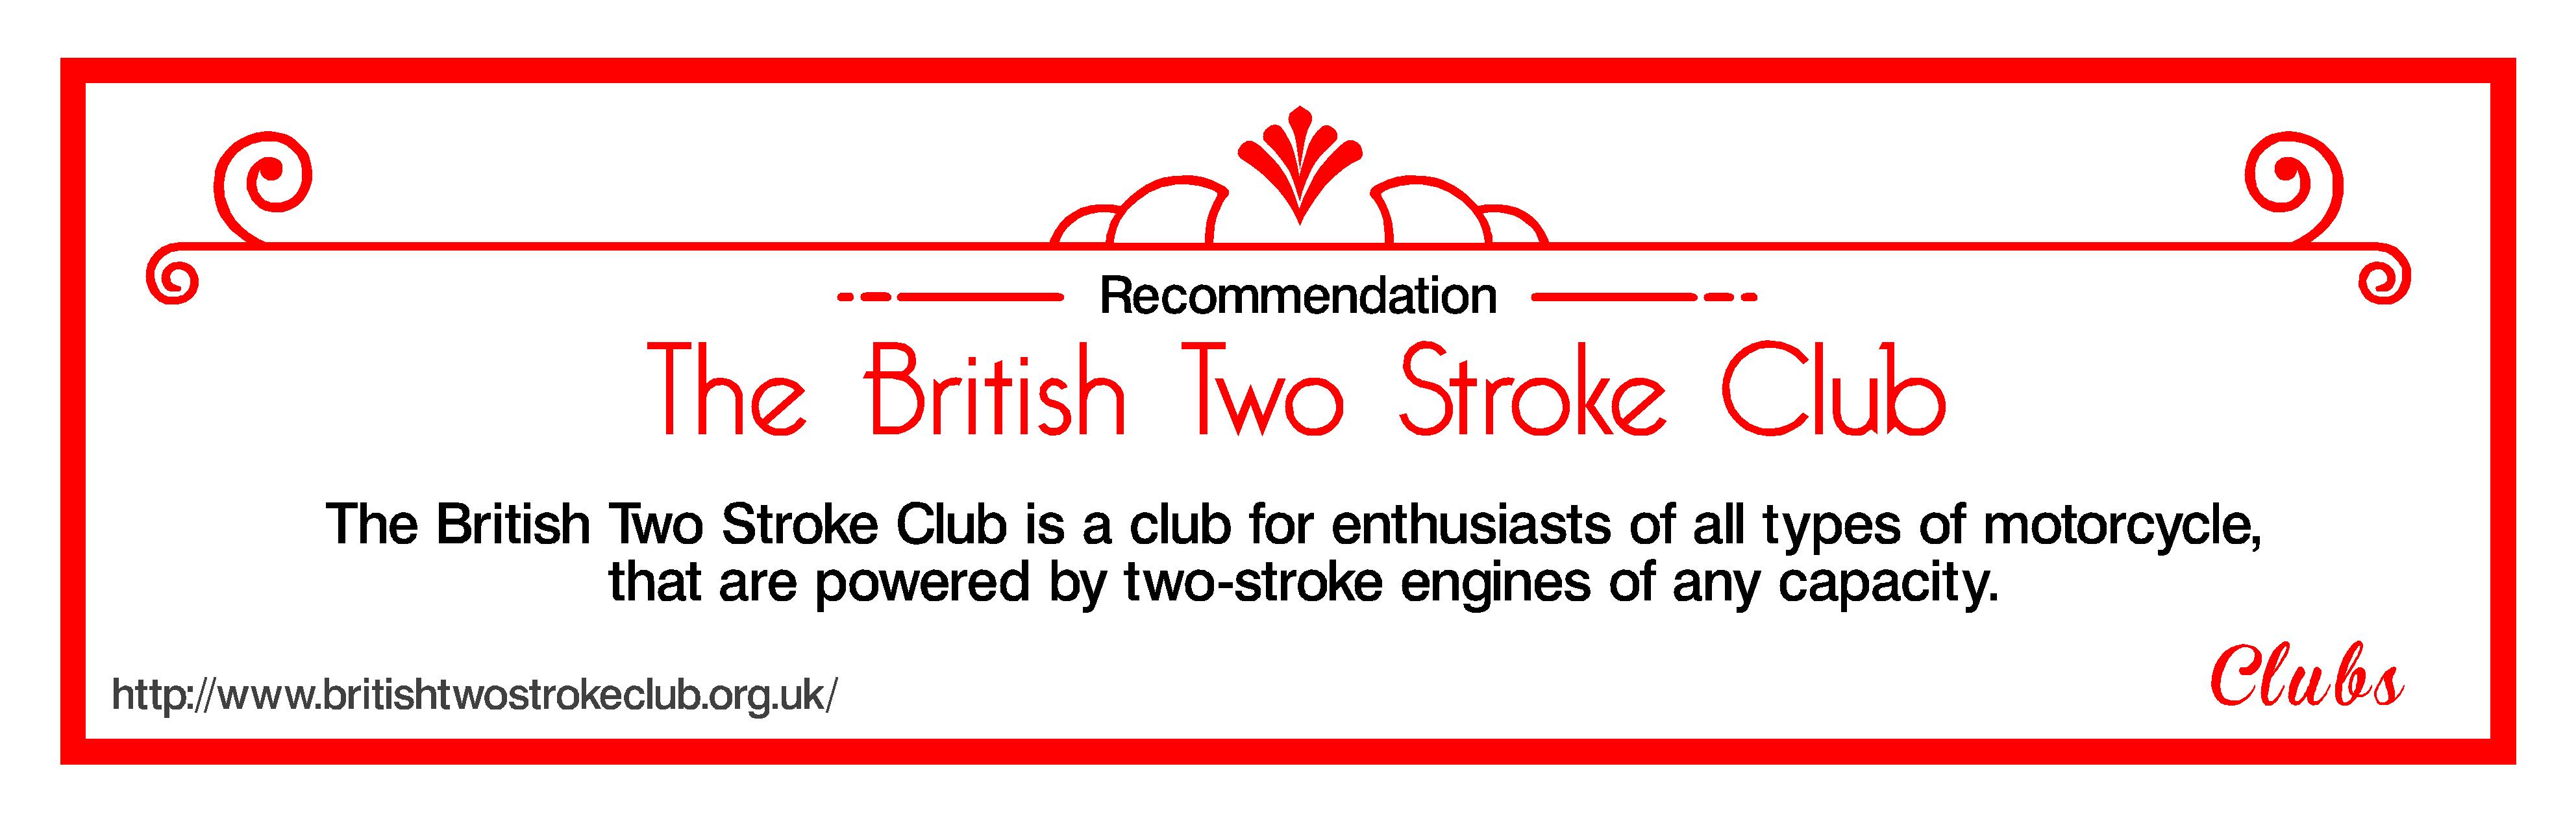 British two stroke club